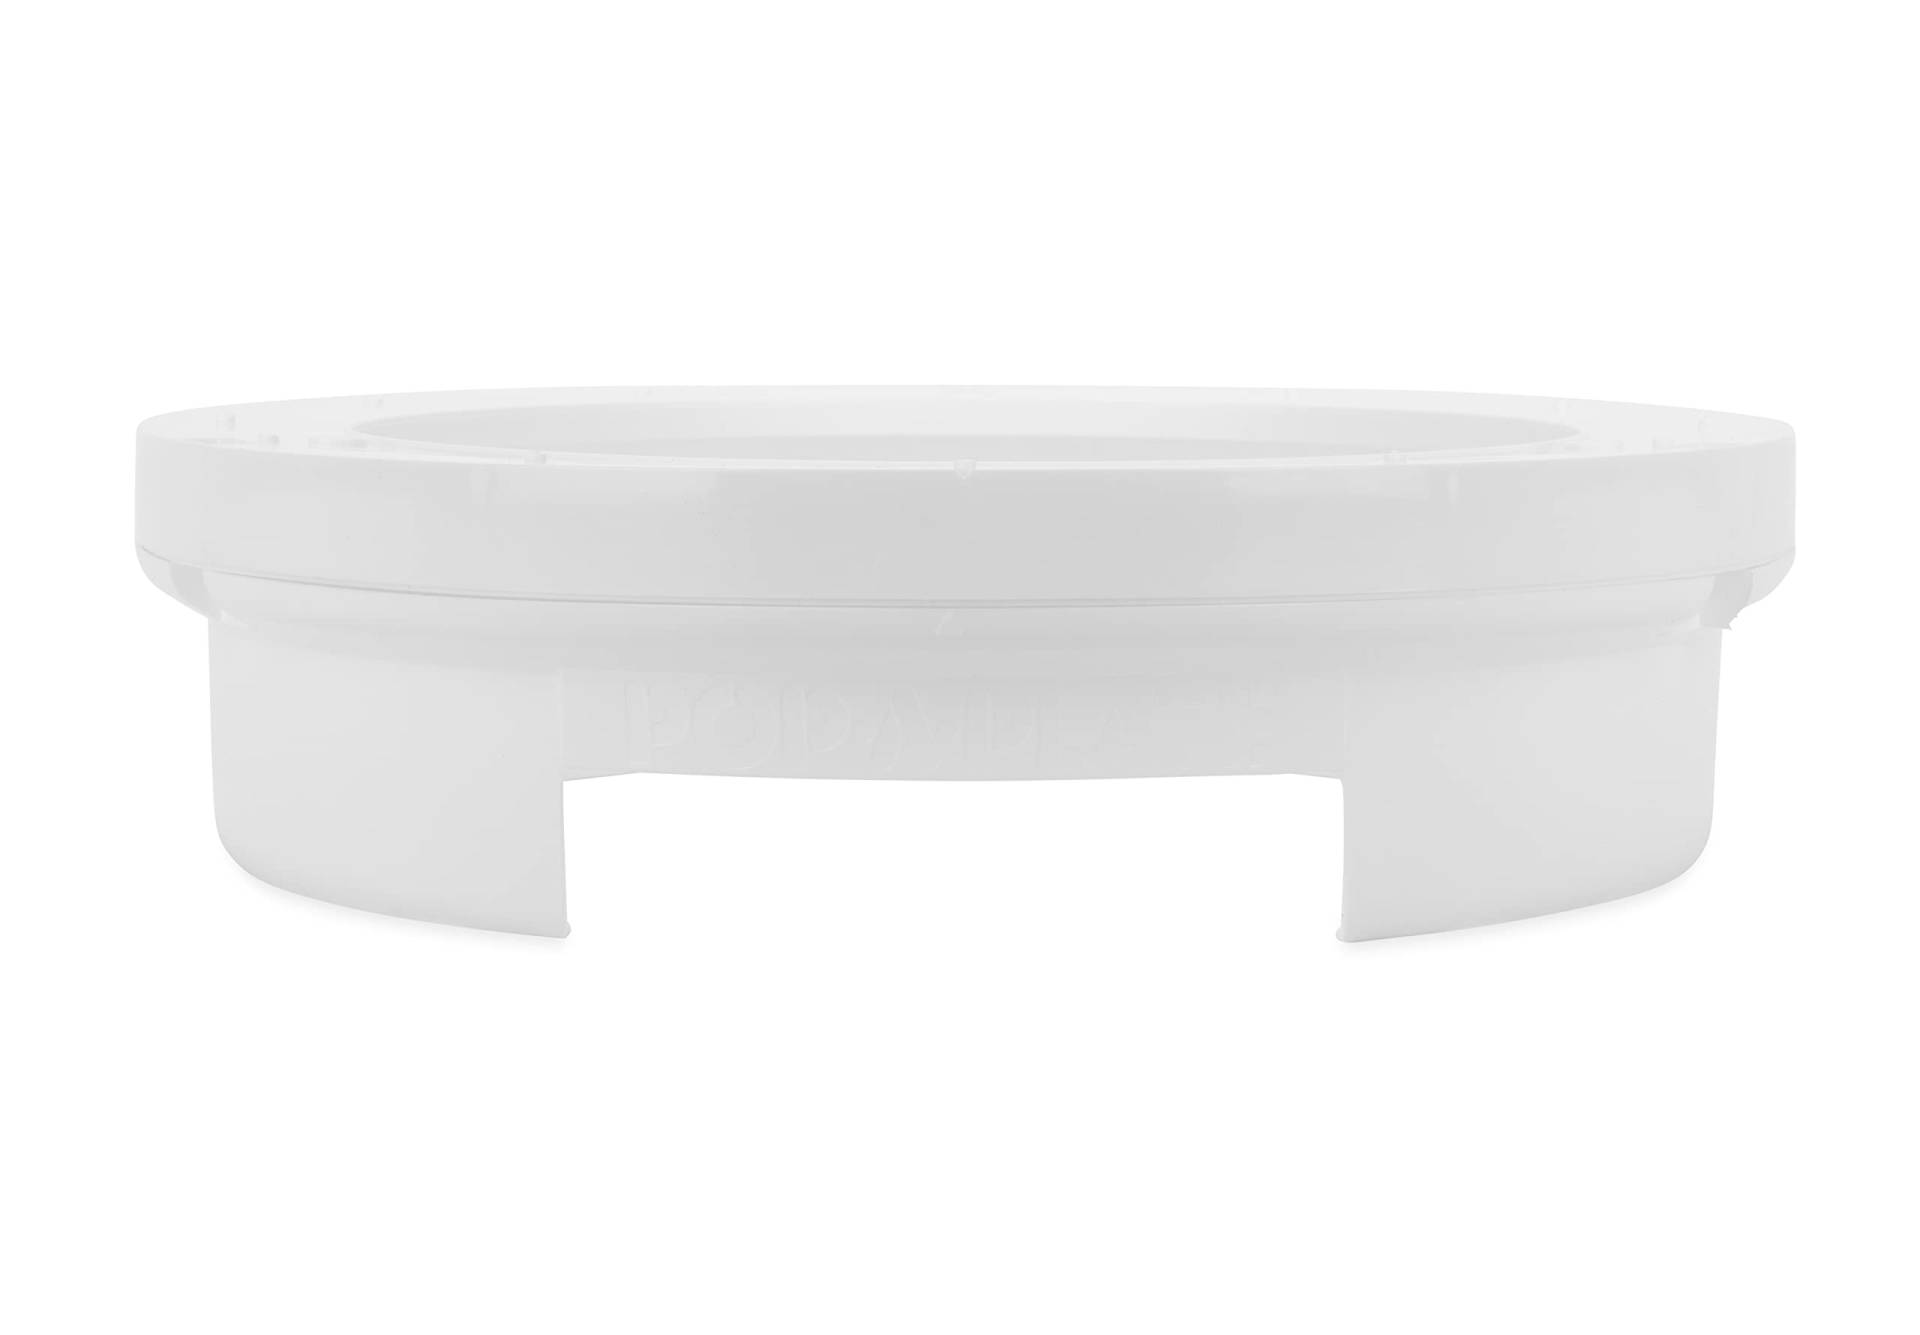 Camco Pop-A-Plate Kunststoff-Tellerspender, 22,9 cm, ideal für kompakte Räume, Wohnmobile und Anhänger, Montage unter Schränken oder Regalen, Weiß (57001) von Camco